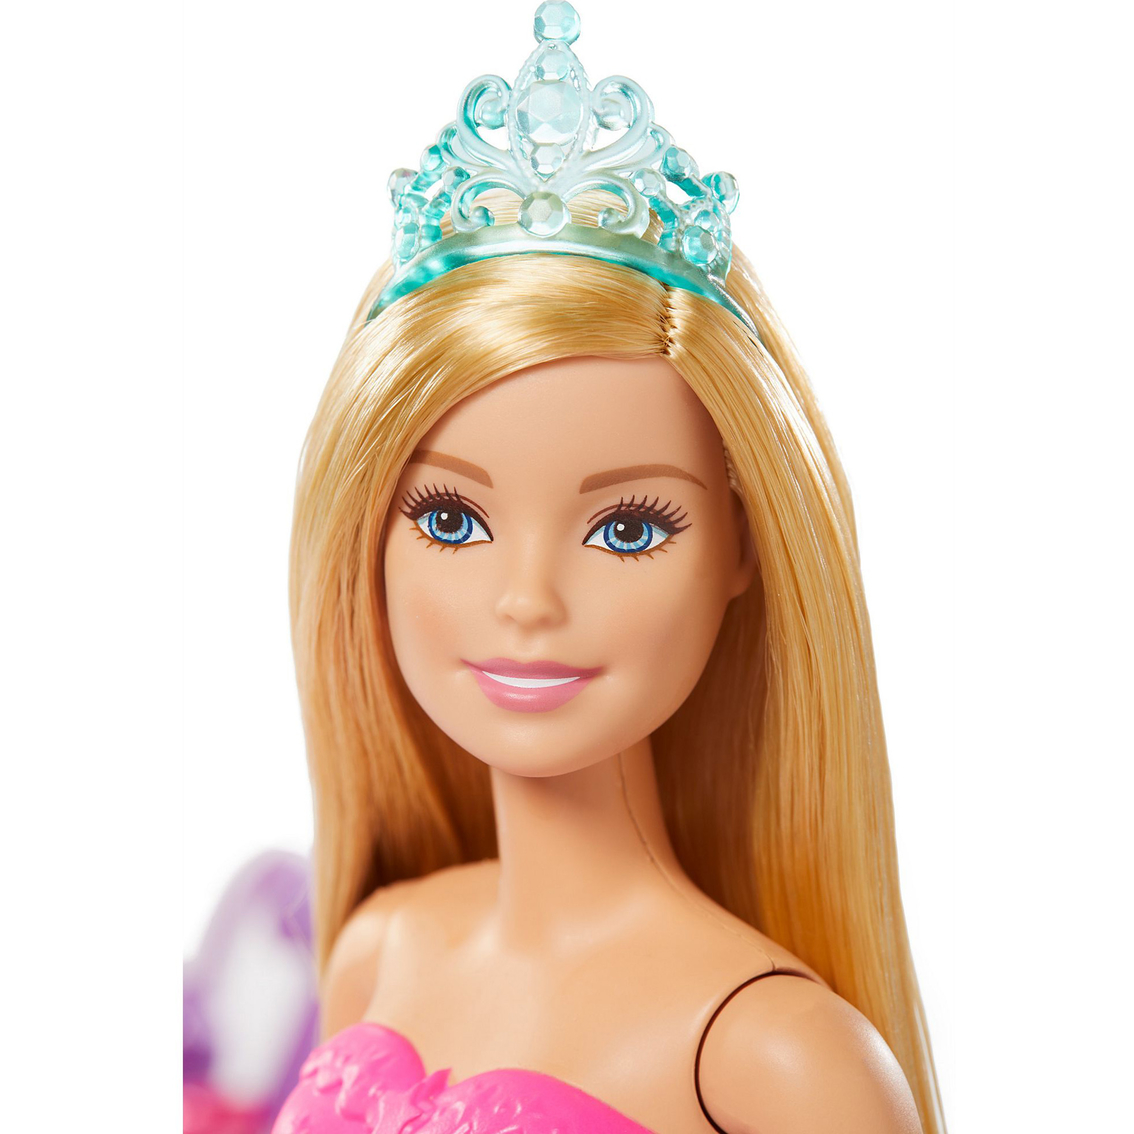 Barbie Dreamtopia Princess Doll - Purple Crown - Shop Action